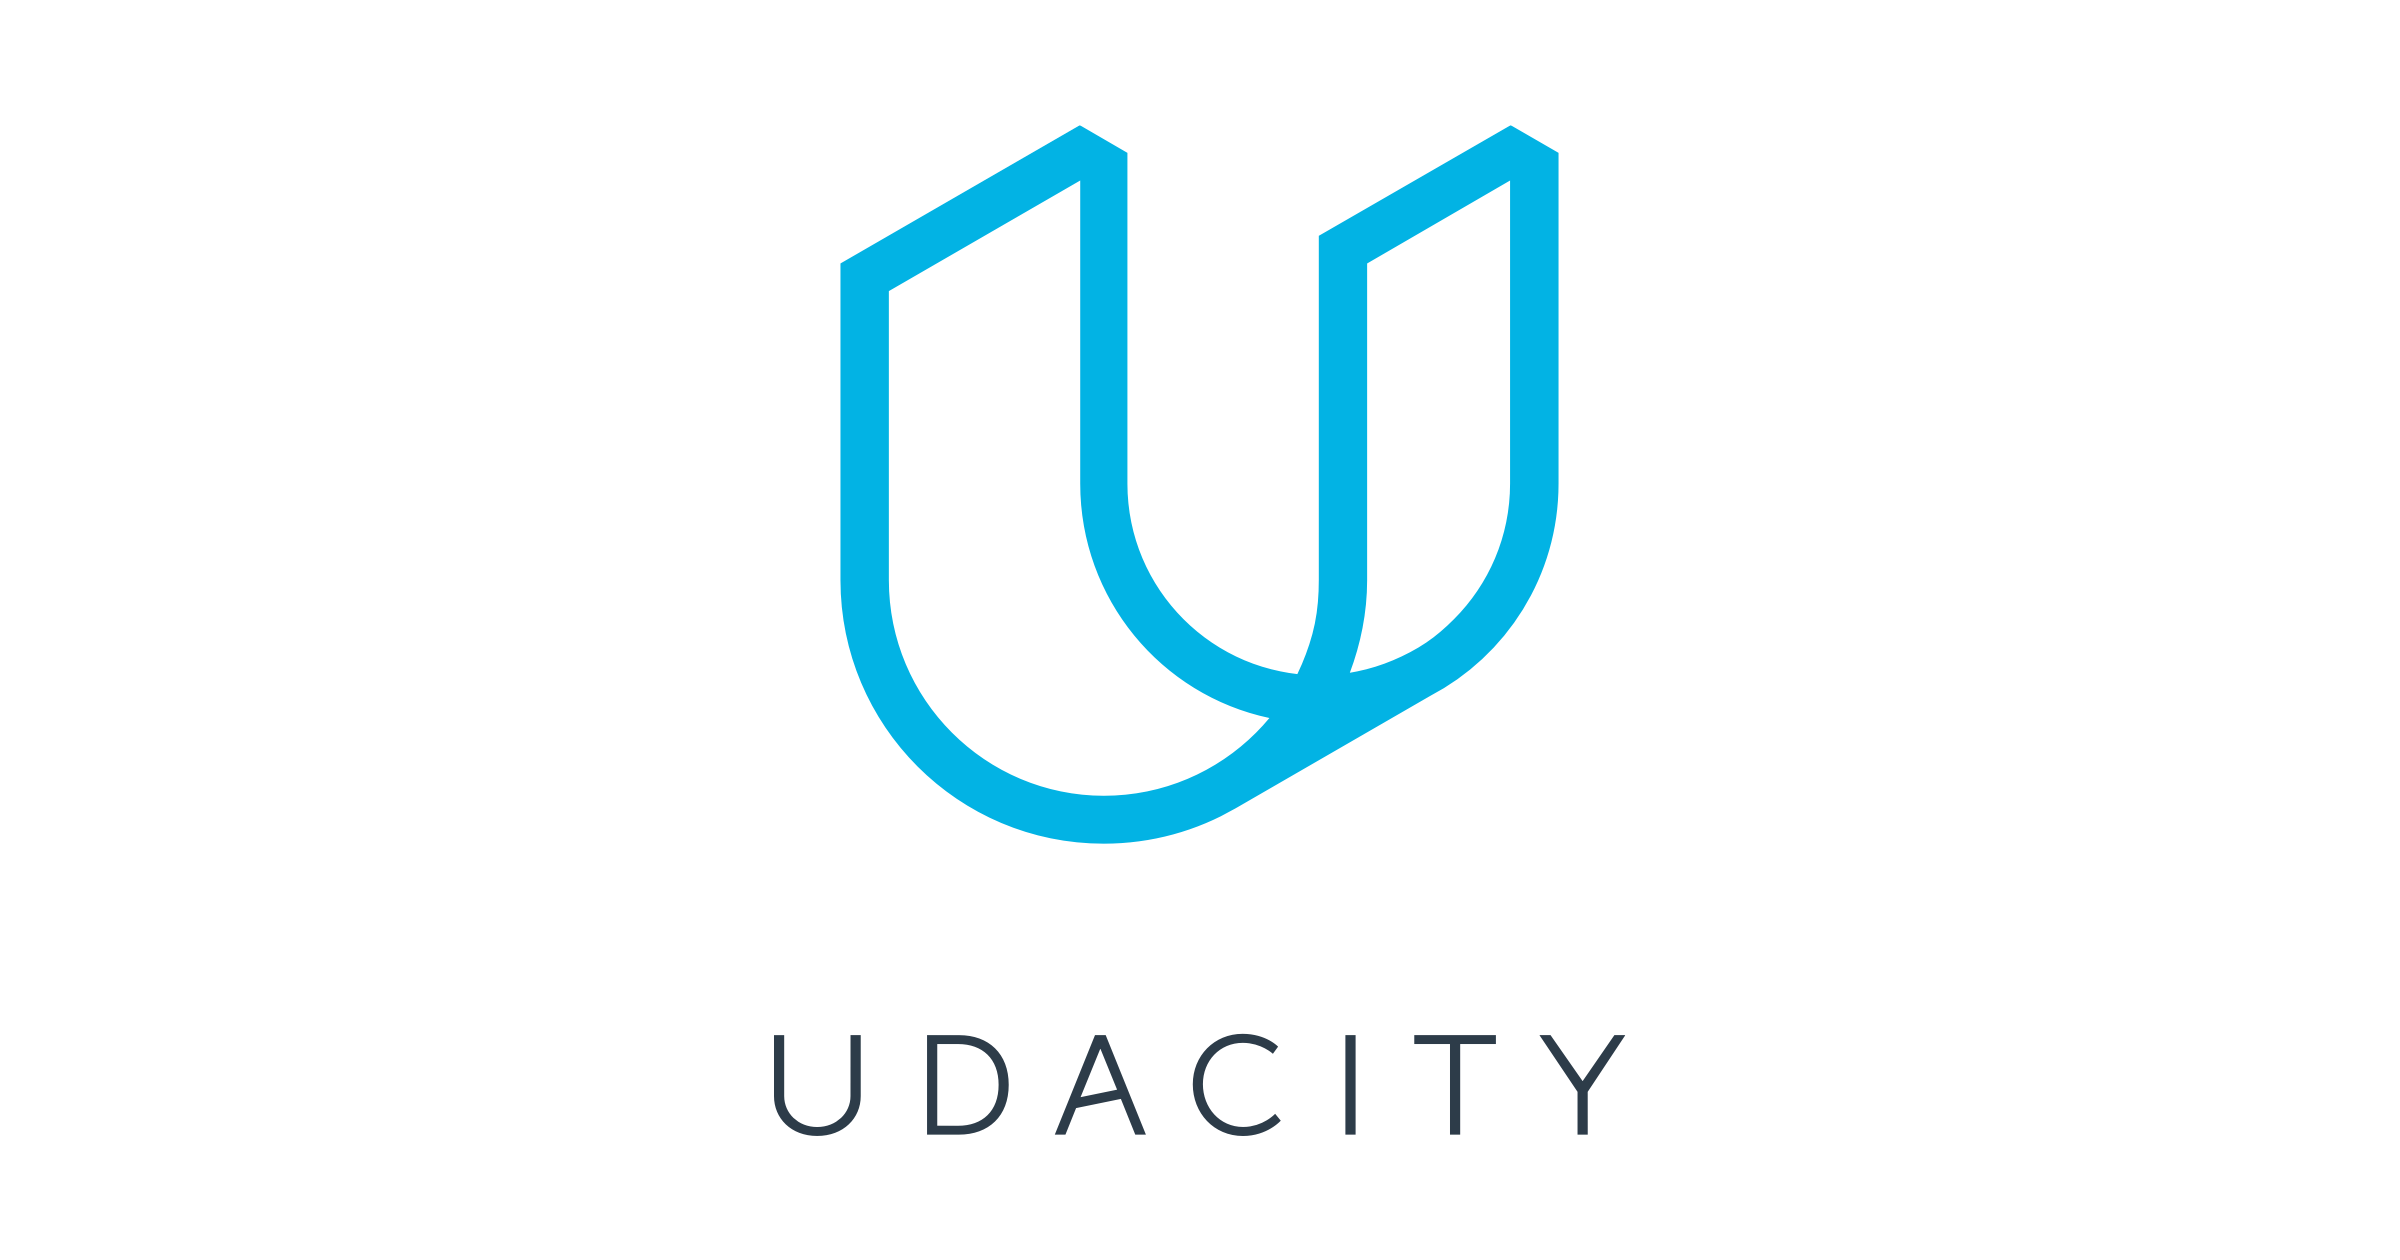 Udacity - Wikipedia